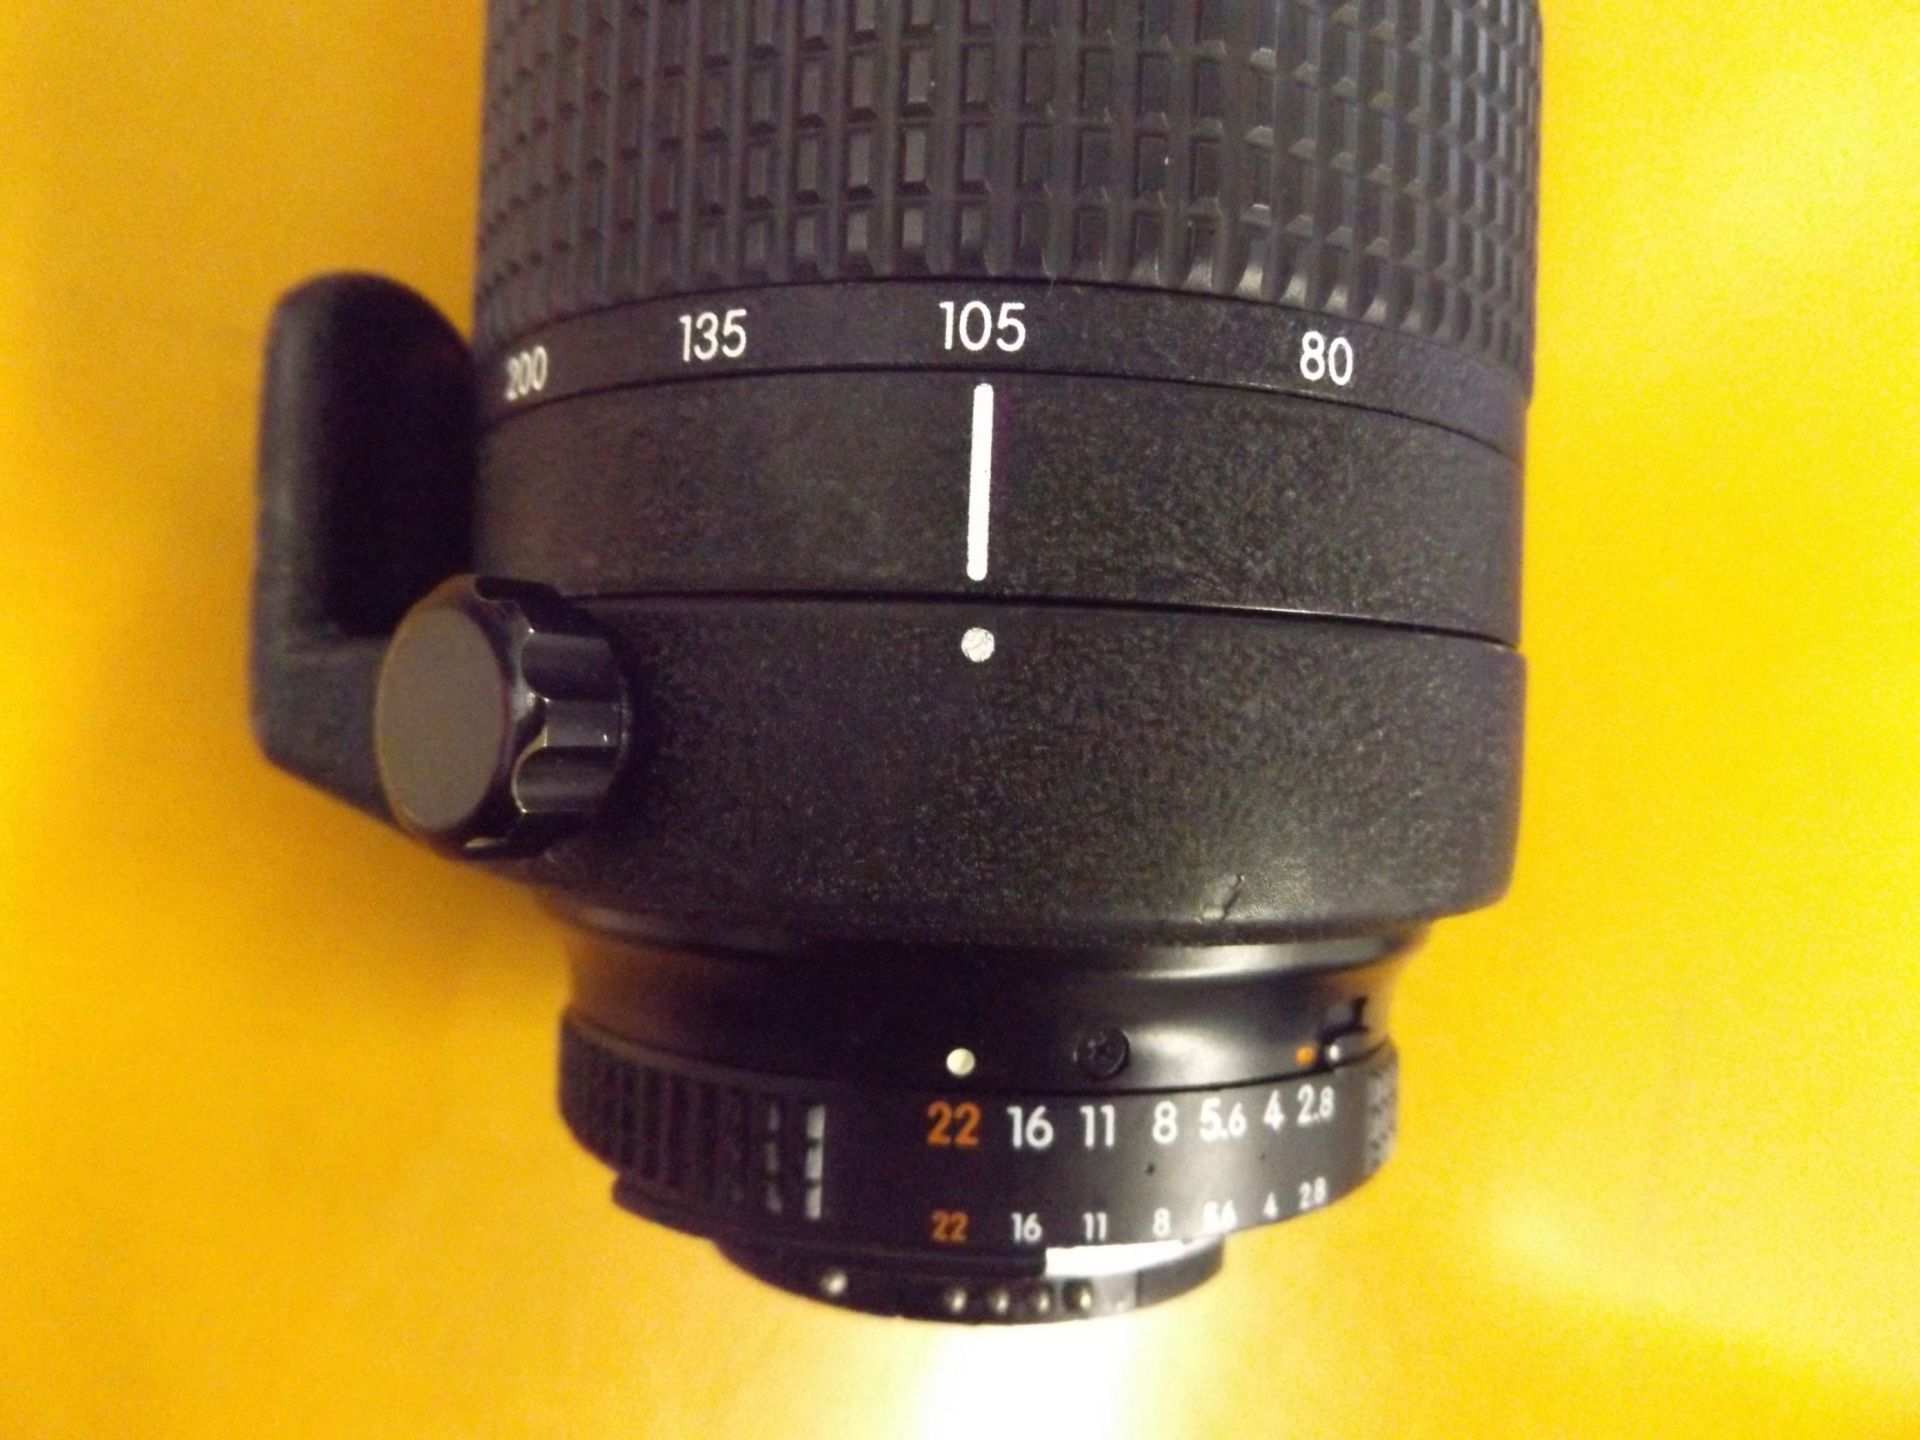 Nikon ED AF Nikkor 80-200mm 1:2.8 D Lense with Leather Case - Image 7 of 10